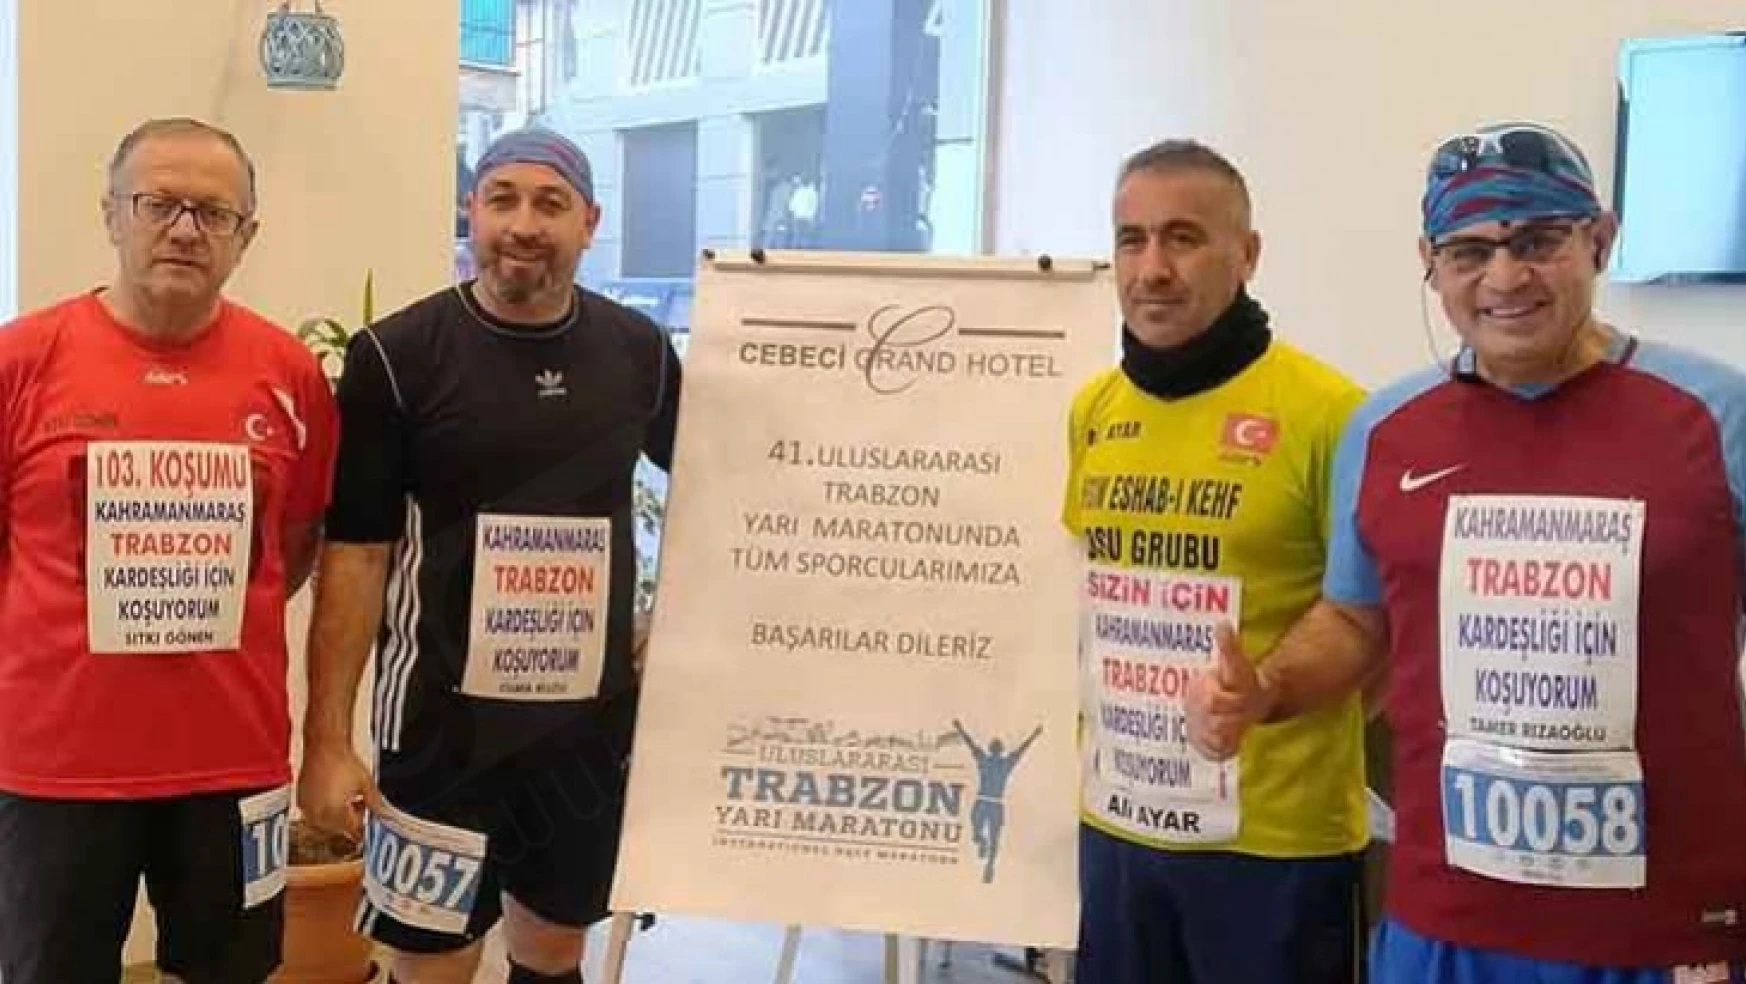 Kahramanmaraş-Trabzon kardeşliği için koştular